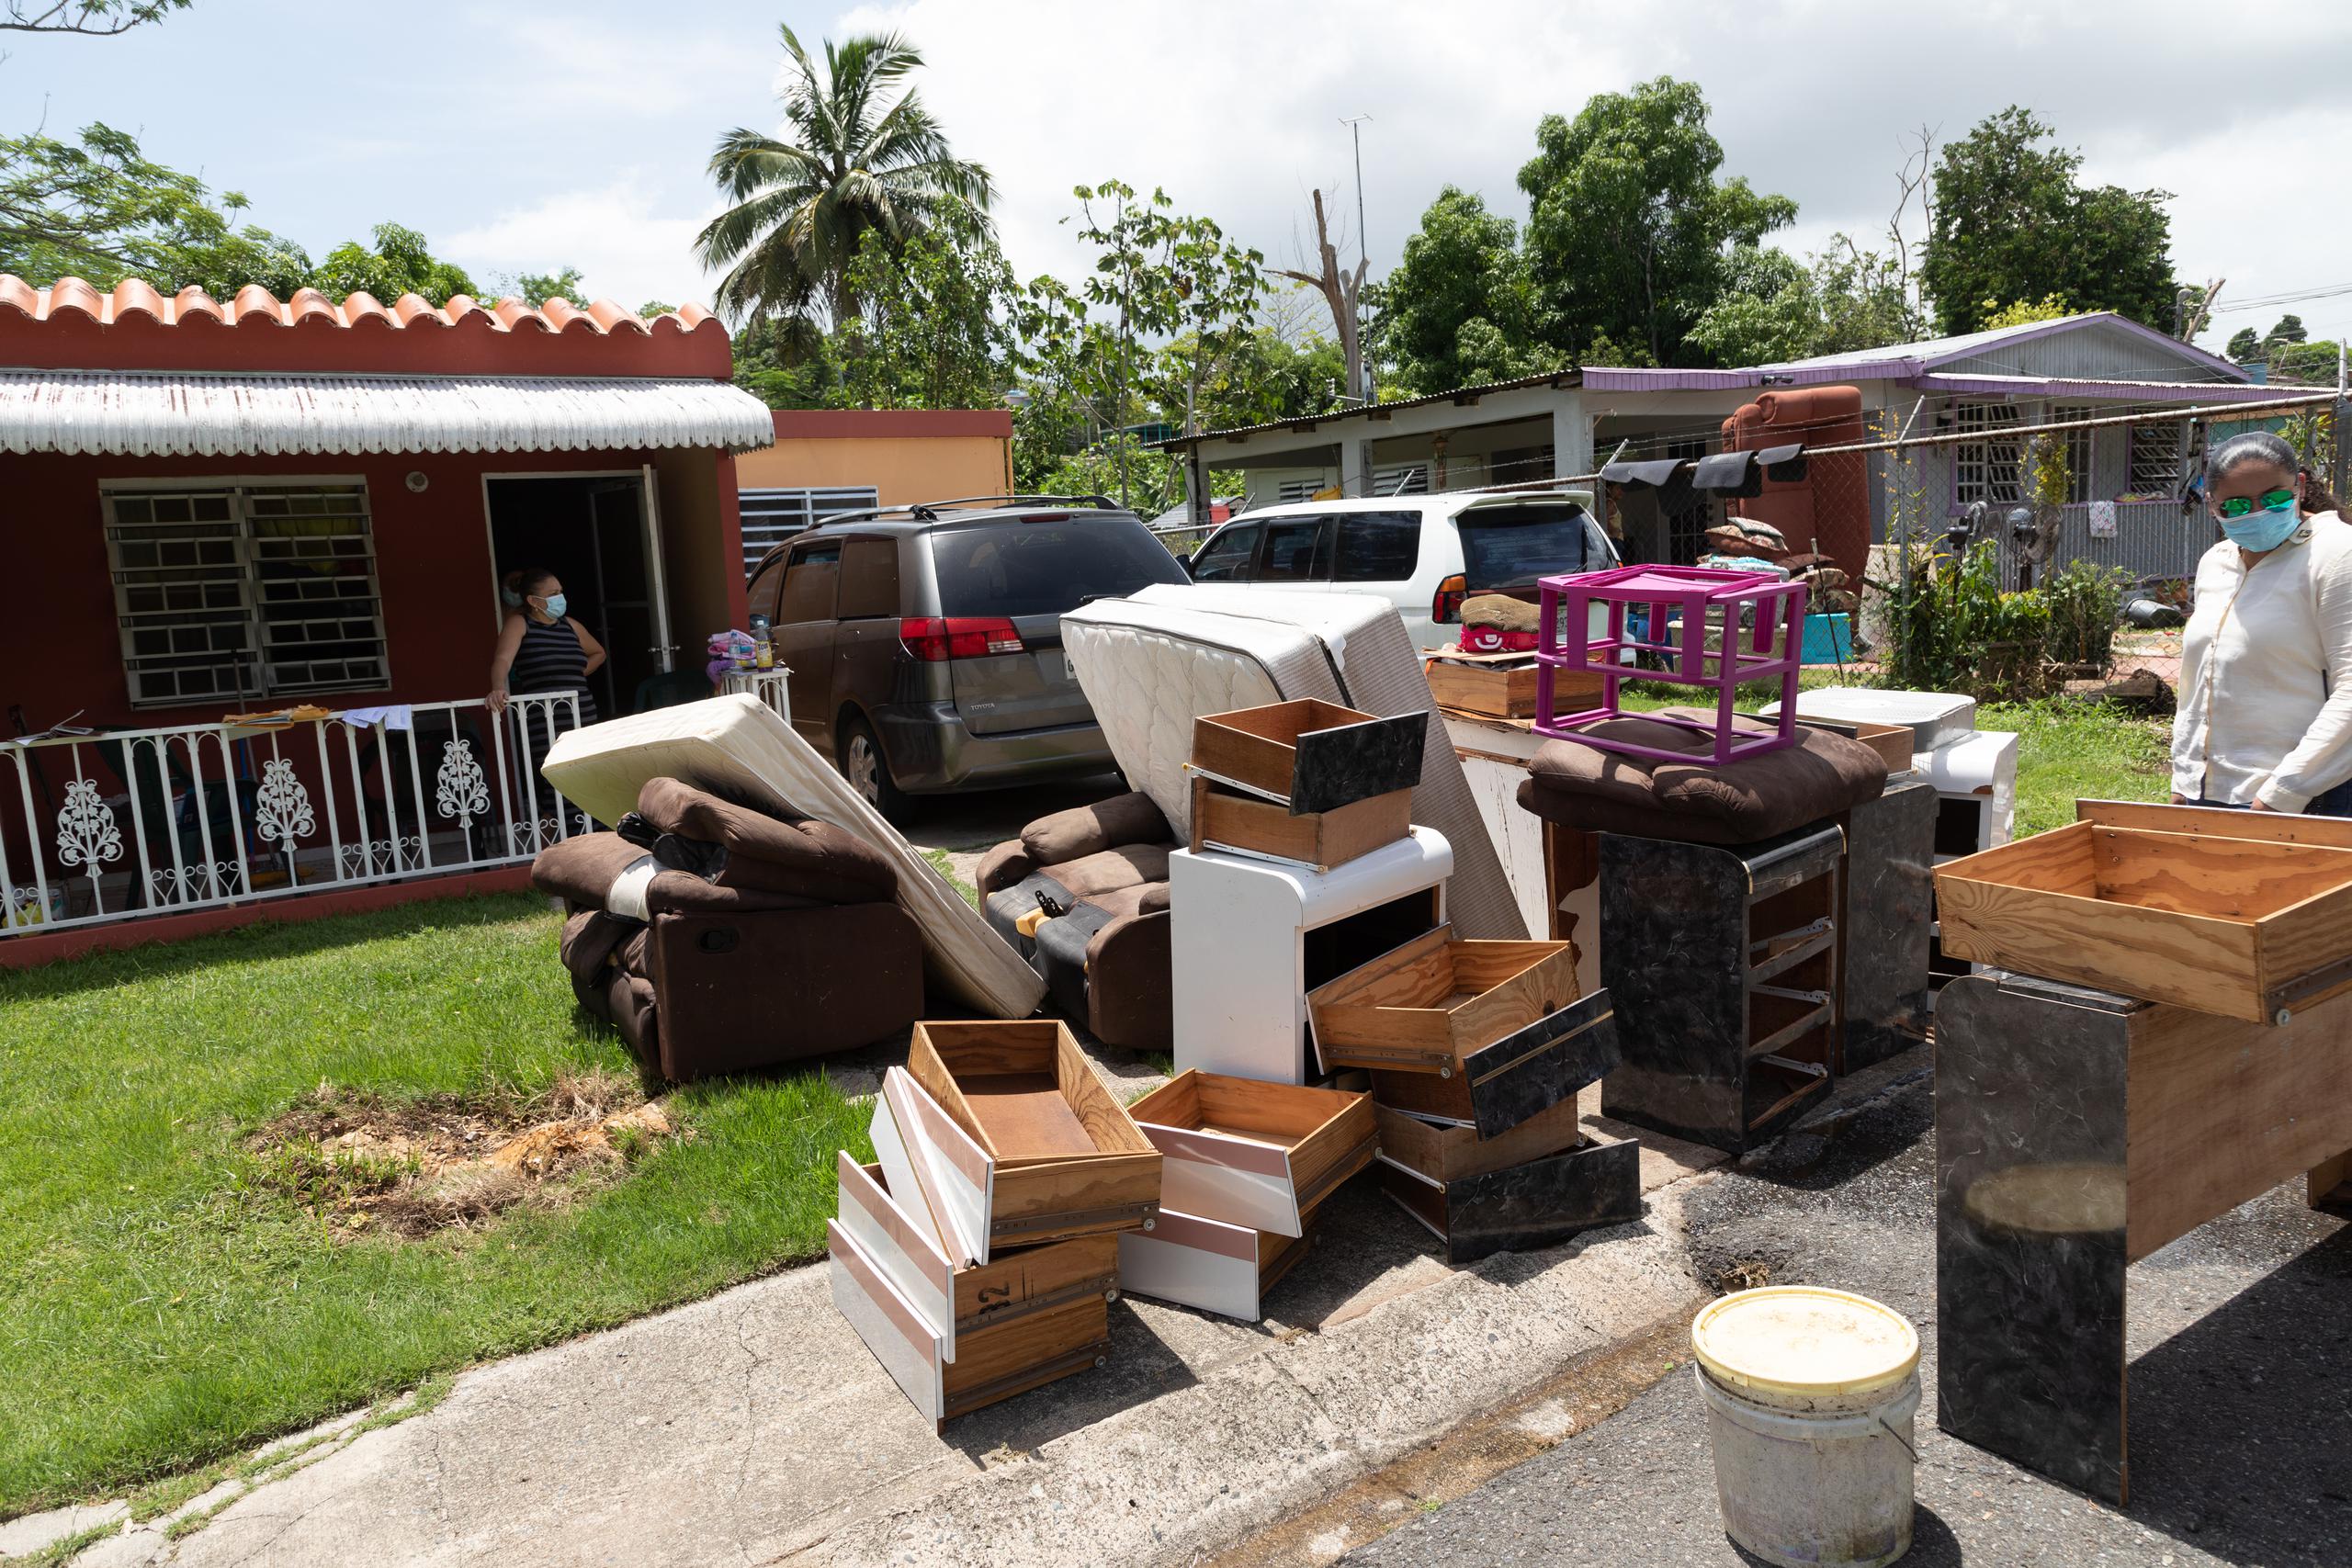 Otras comunidades que sufrieron daños en el área de Mayagüez fueron Buenaventura, Valle Hermoso, Terrace y Sábalo, entre otros.